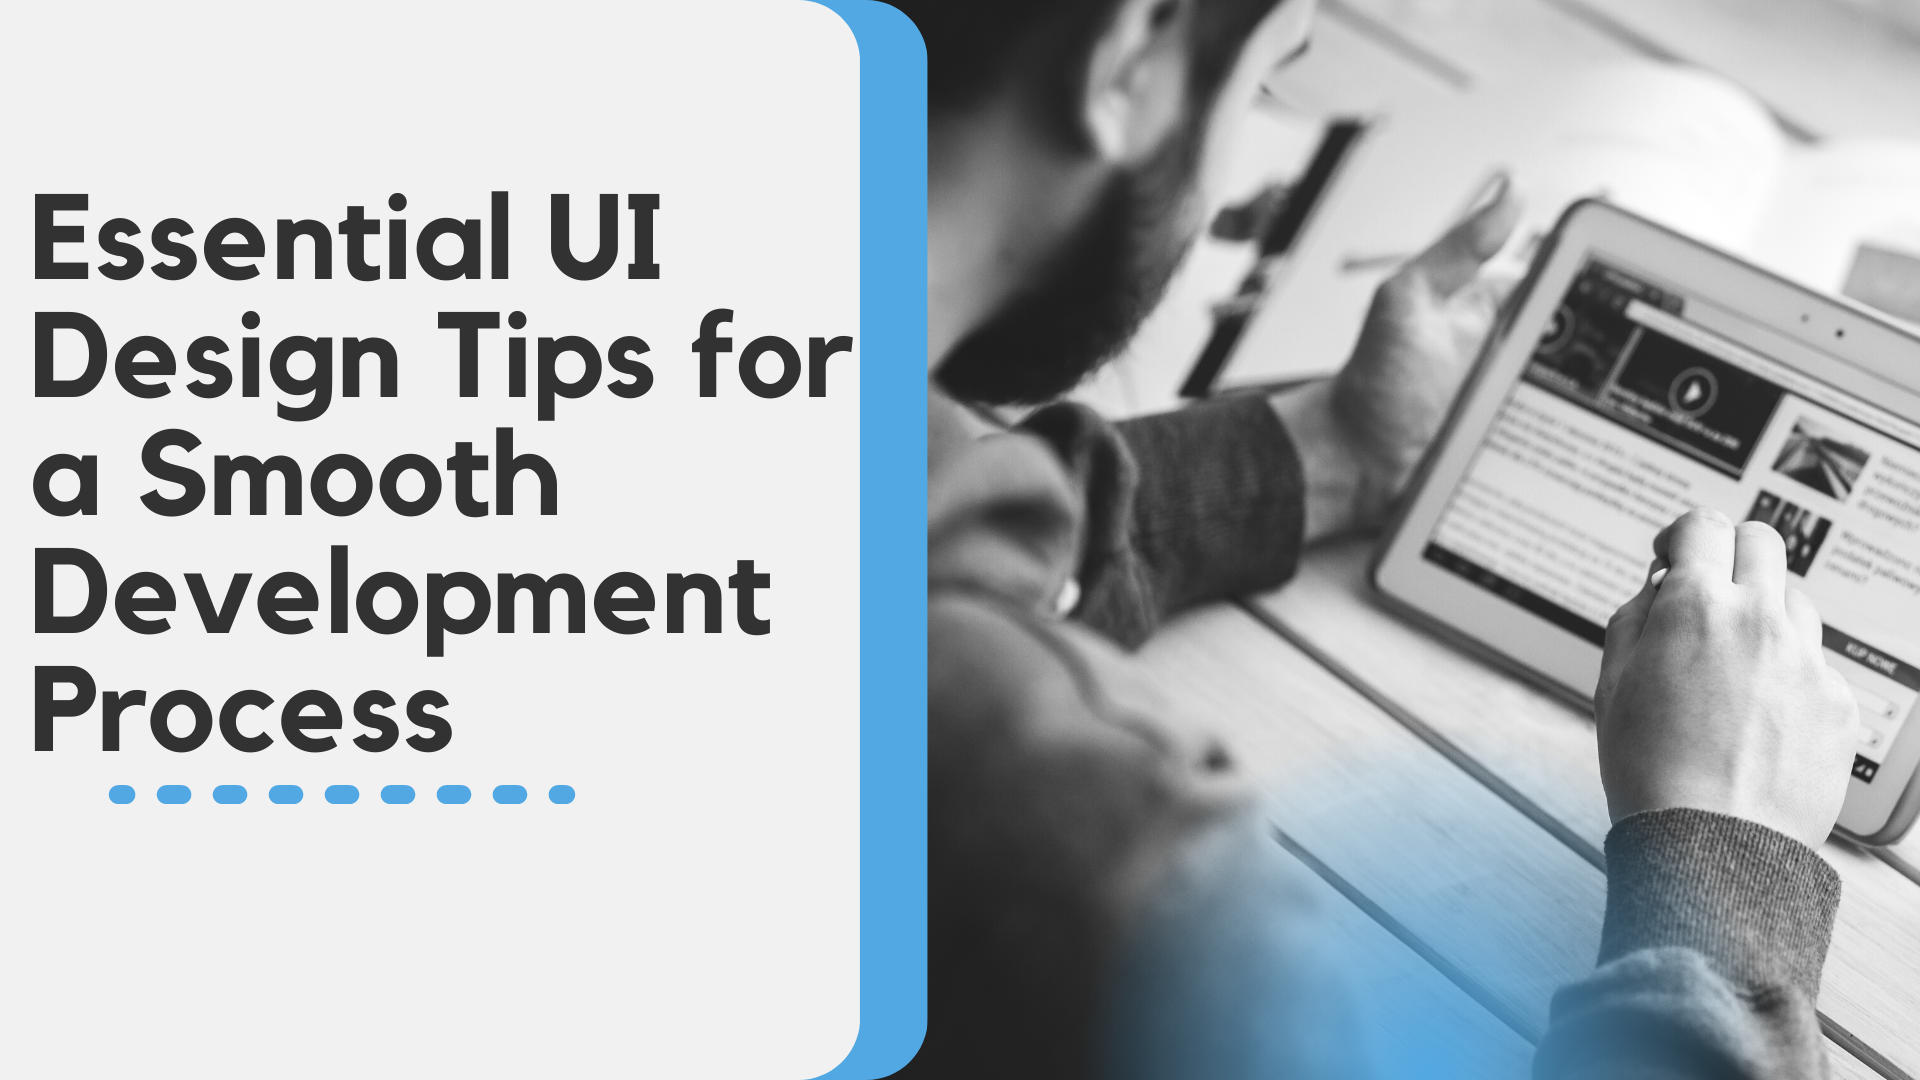 Essential UI Design Tips for a Smooth Development Process